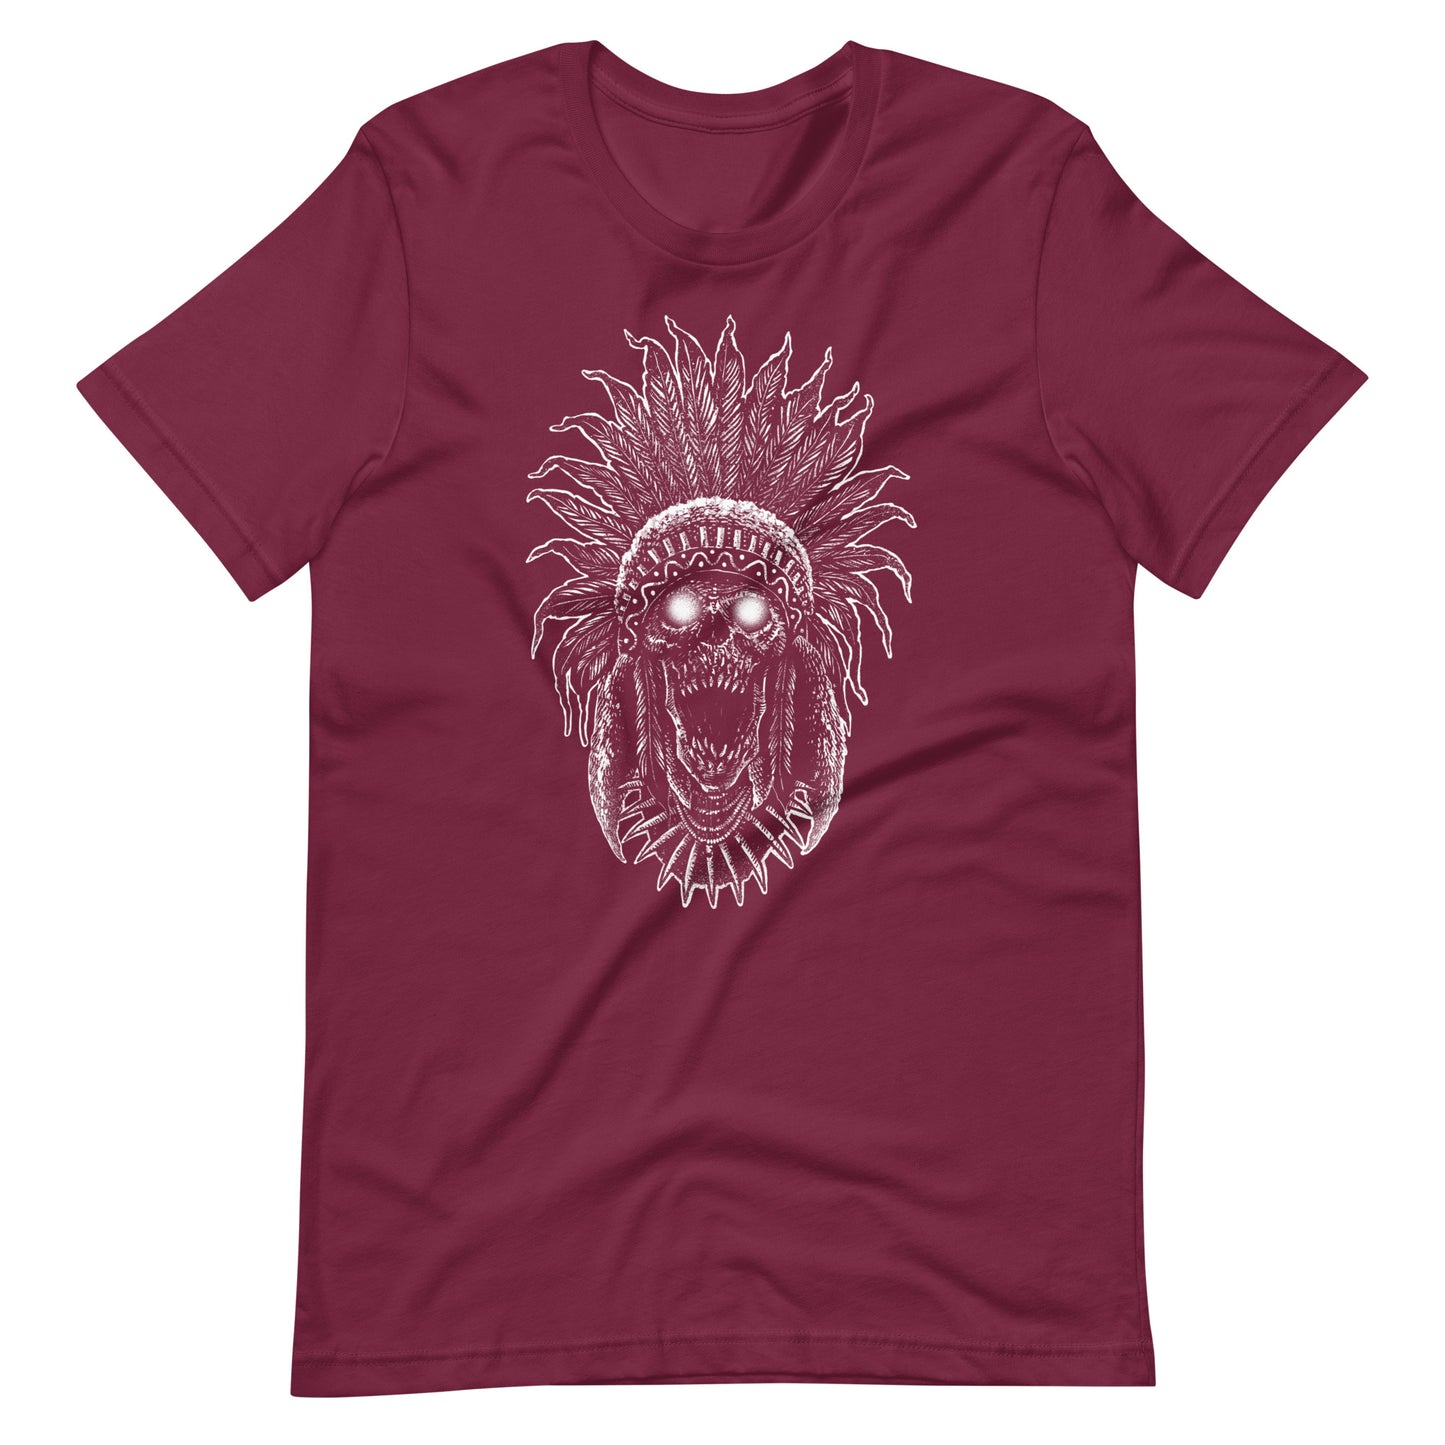 Tribe Skull White - Unisex t-shirt - Maroon Front